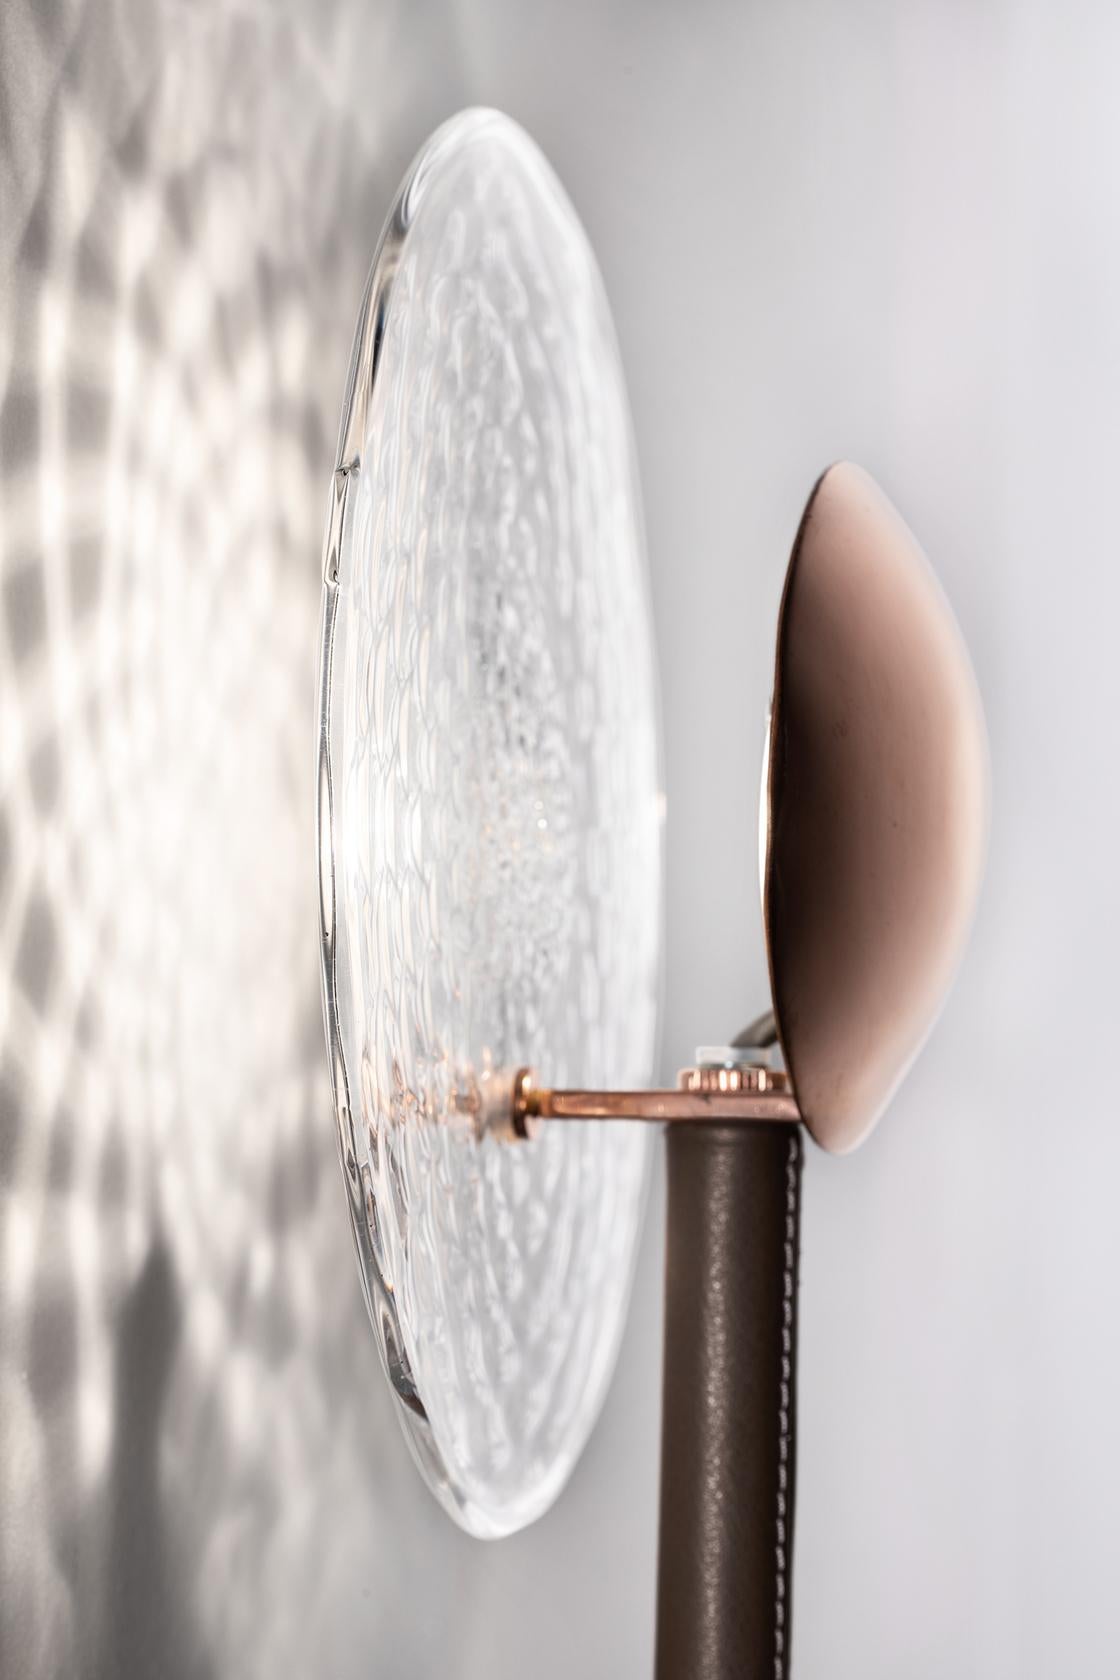 Fatto a mano Rullo, lampada da parete a LED composta da uno stelo in ottone rivestito e da un disco di vetro trasparente in vendita